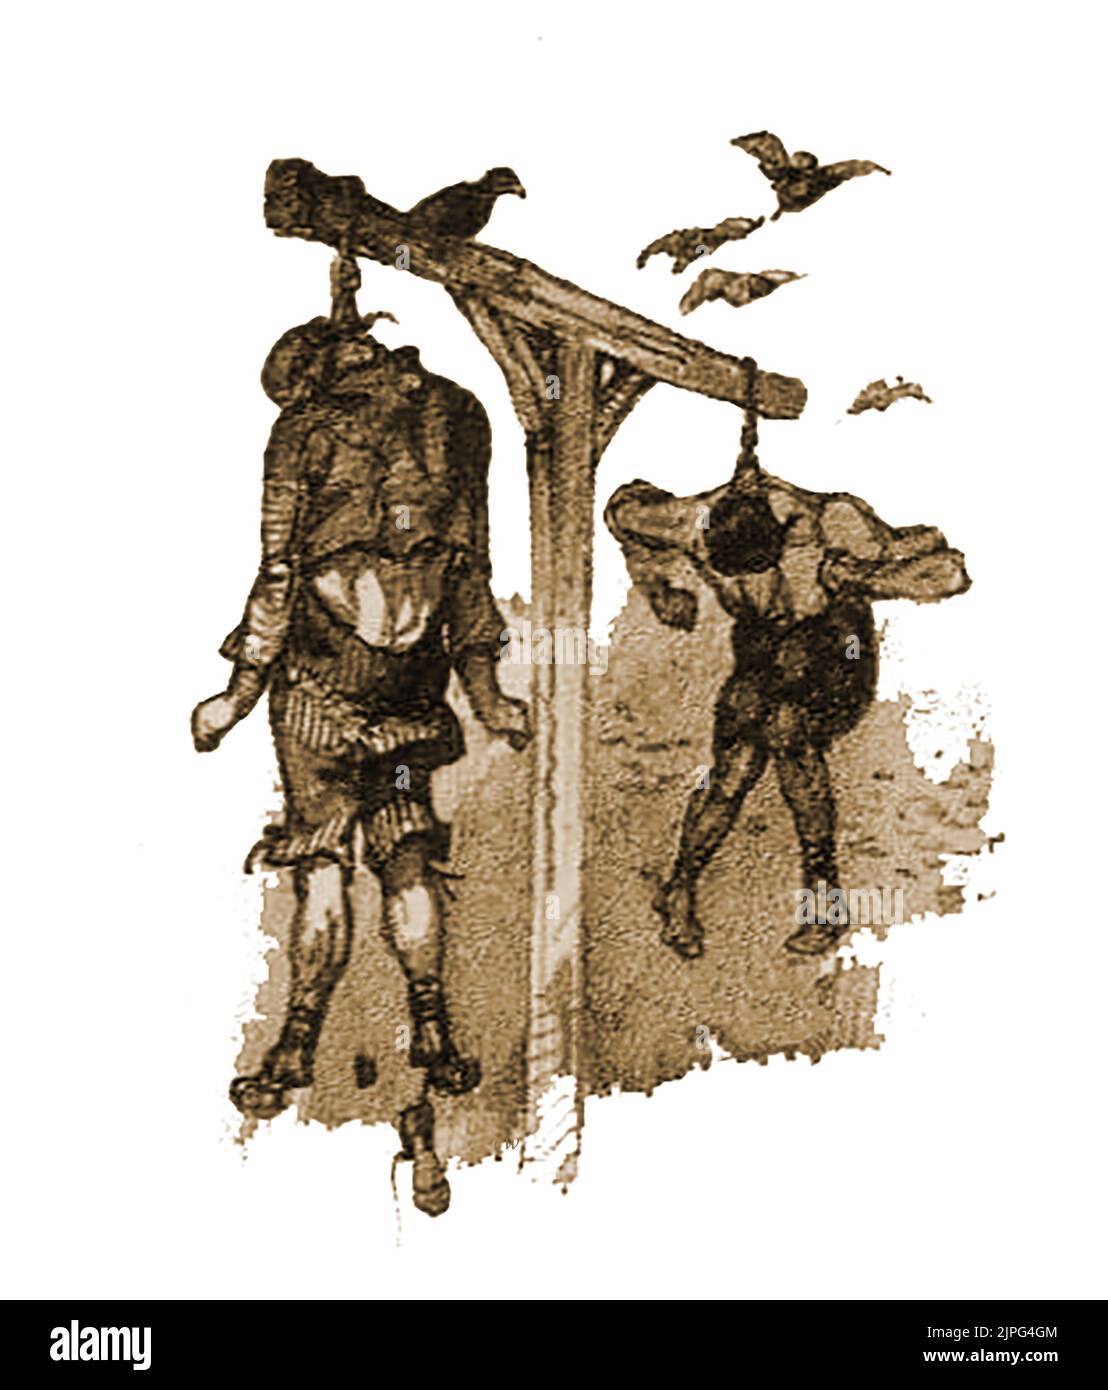 Hinrichtung - Eine sehr alte grafische Skizze britischer Gefangener in den Todesursachen zum Zeitpunkt ihrer Erhängung. Seltsamerweise scheint der Mann auf der Rückseite nur einen Schuh an zu haben und der Mann auf der Vorderseite ist ähnlich geumartert, aber mit seinem Ersatzschuh, der an einer Spitze seines anderen Fußes hängt. Stockfoto